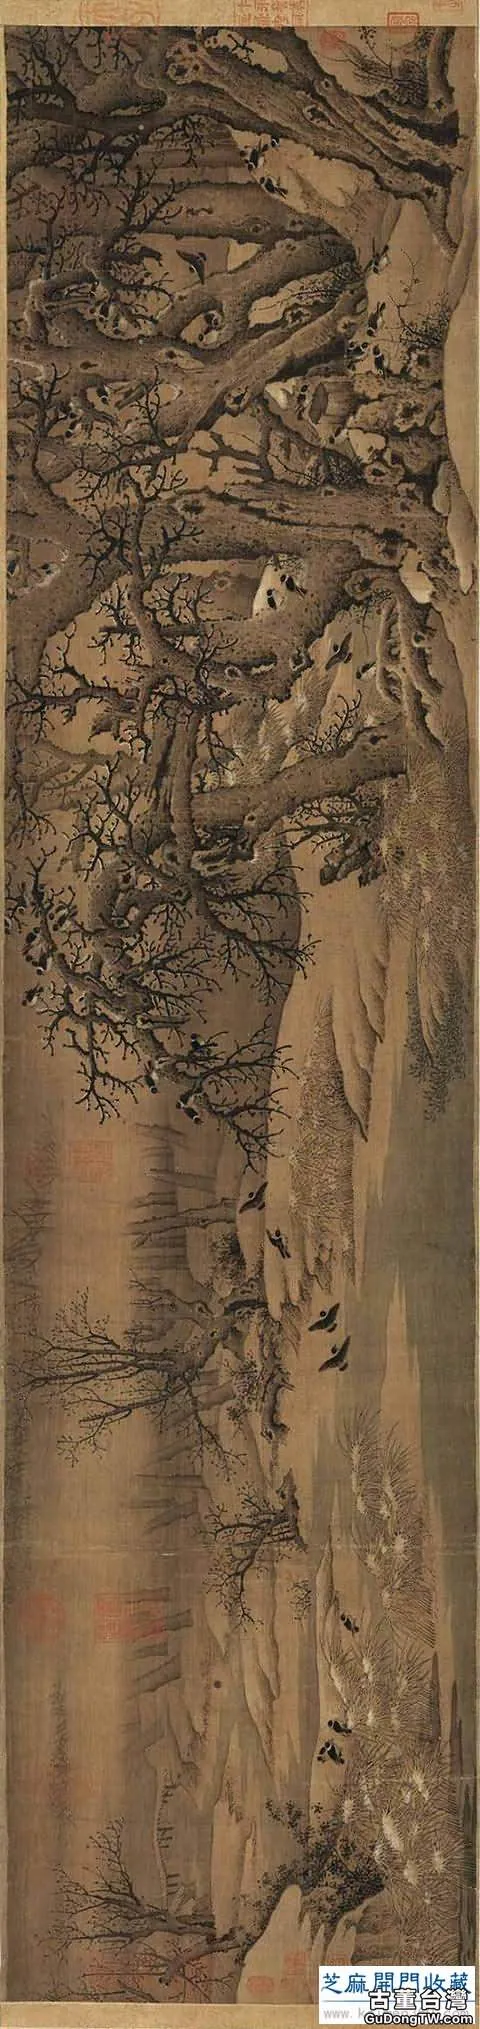 「經典欣賞」五代宋初大畫家李成的傳世山水畫